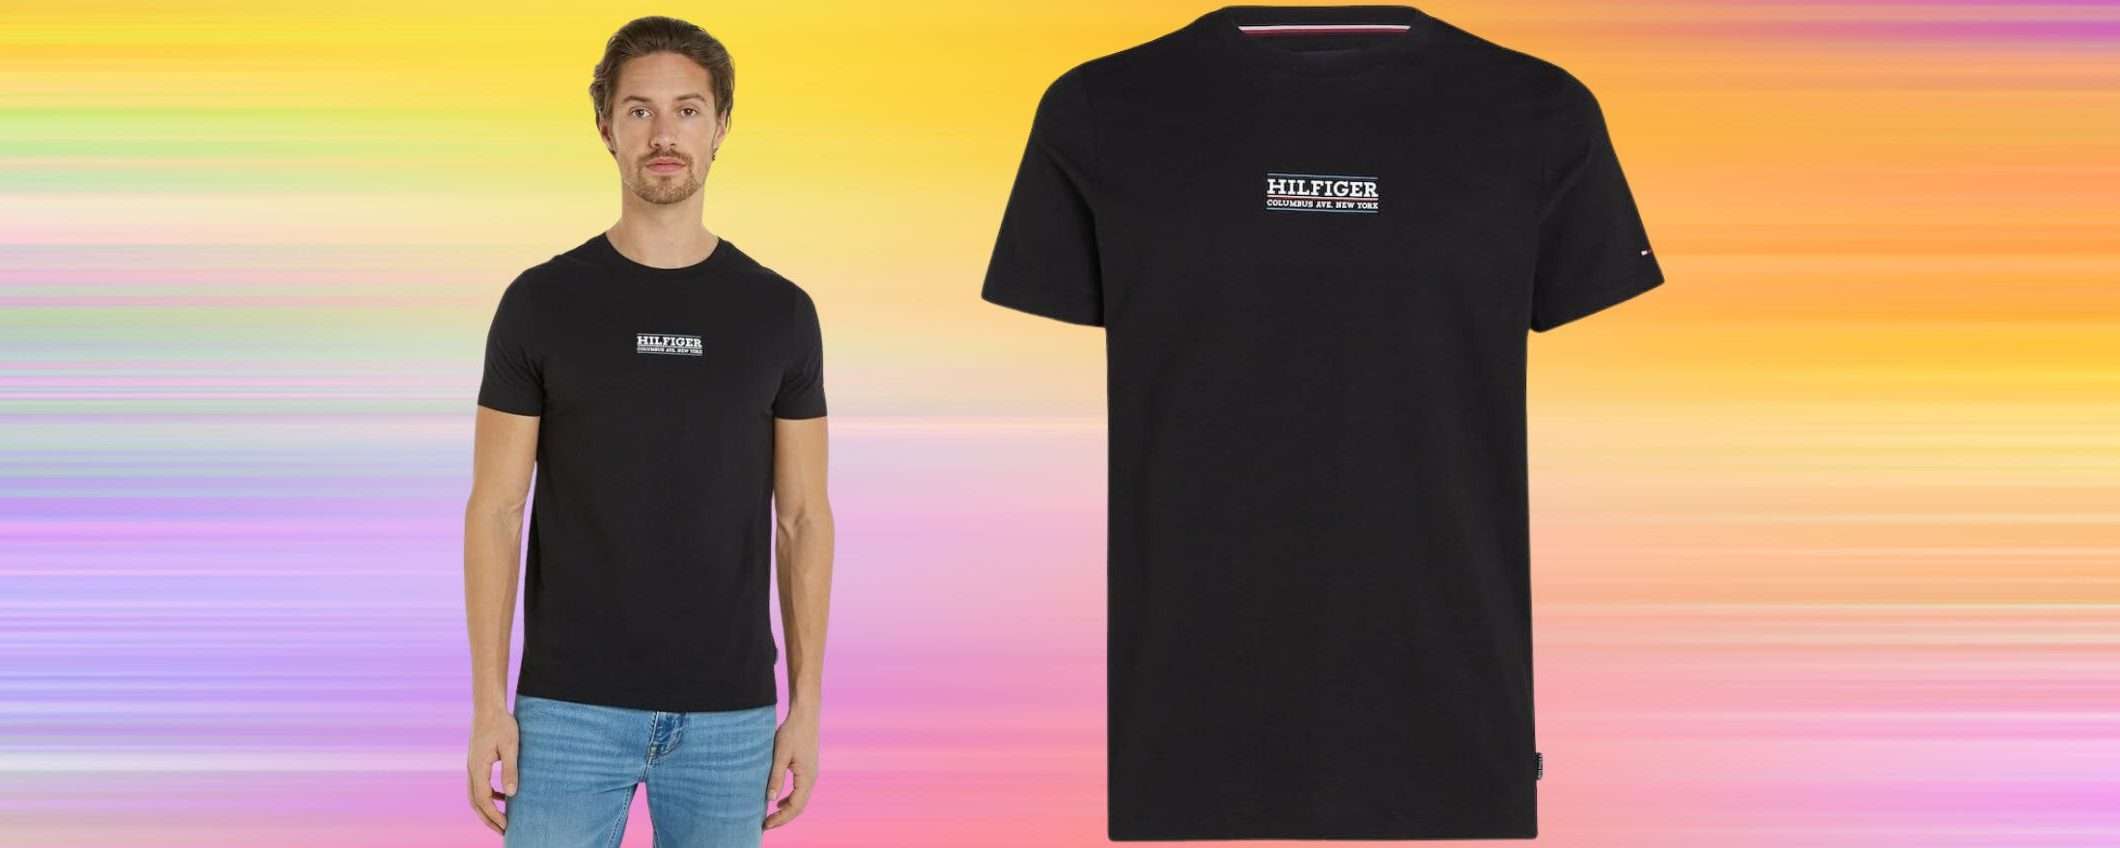 Tommy Hilfiger: Amazon SVUOTA i magazzini, magliette a soli 20 euro!